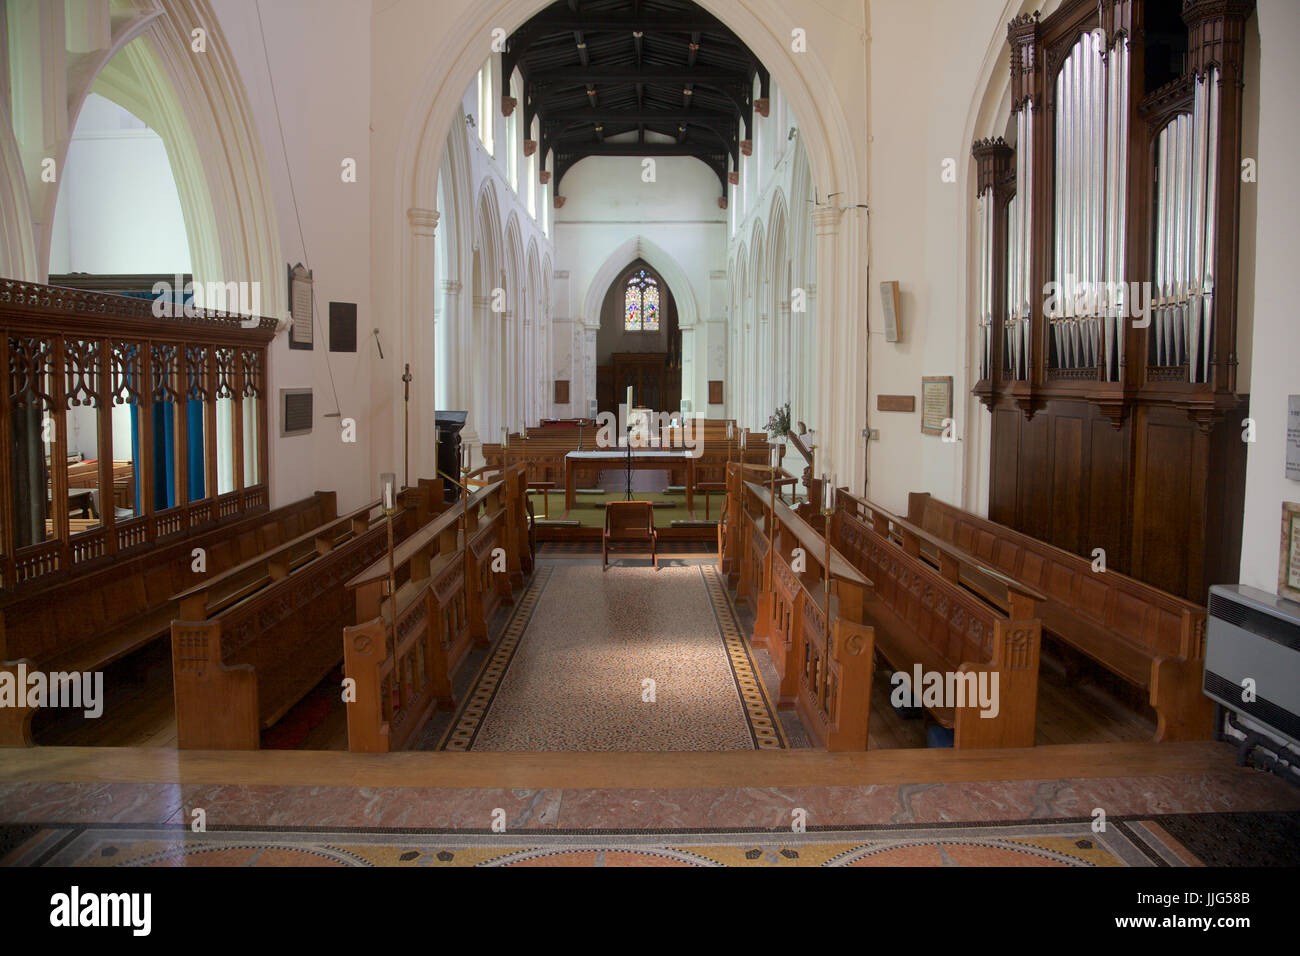 Interior of St Mary's parish church, Ware, Hertfordshire, England Stock Photo